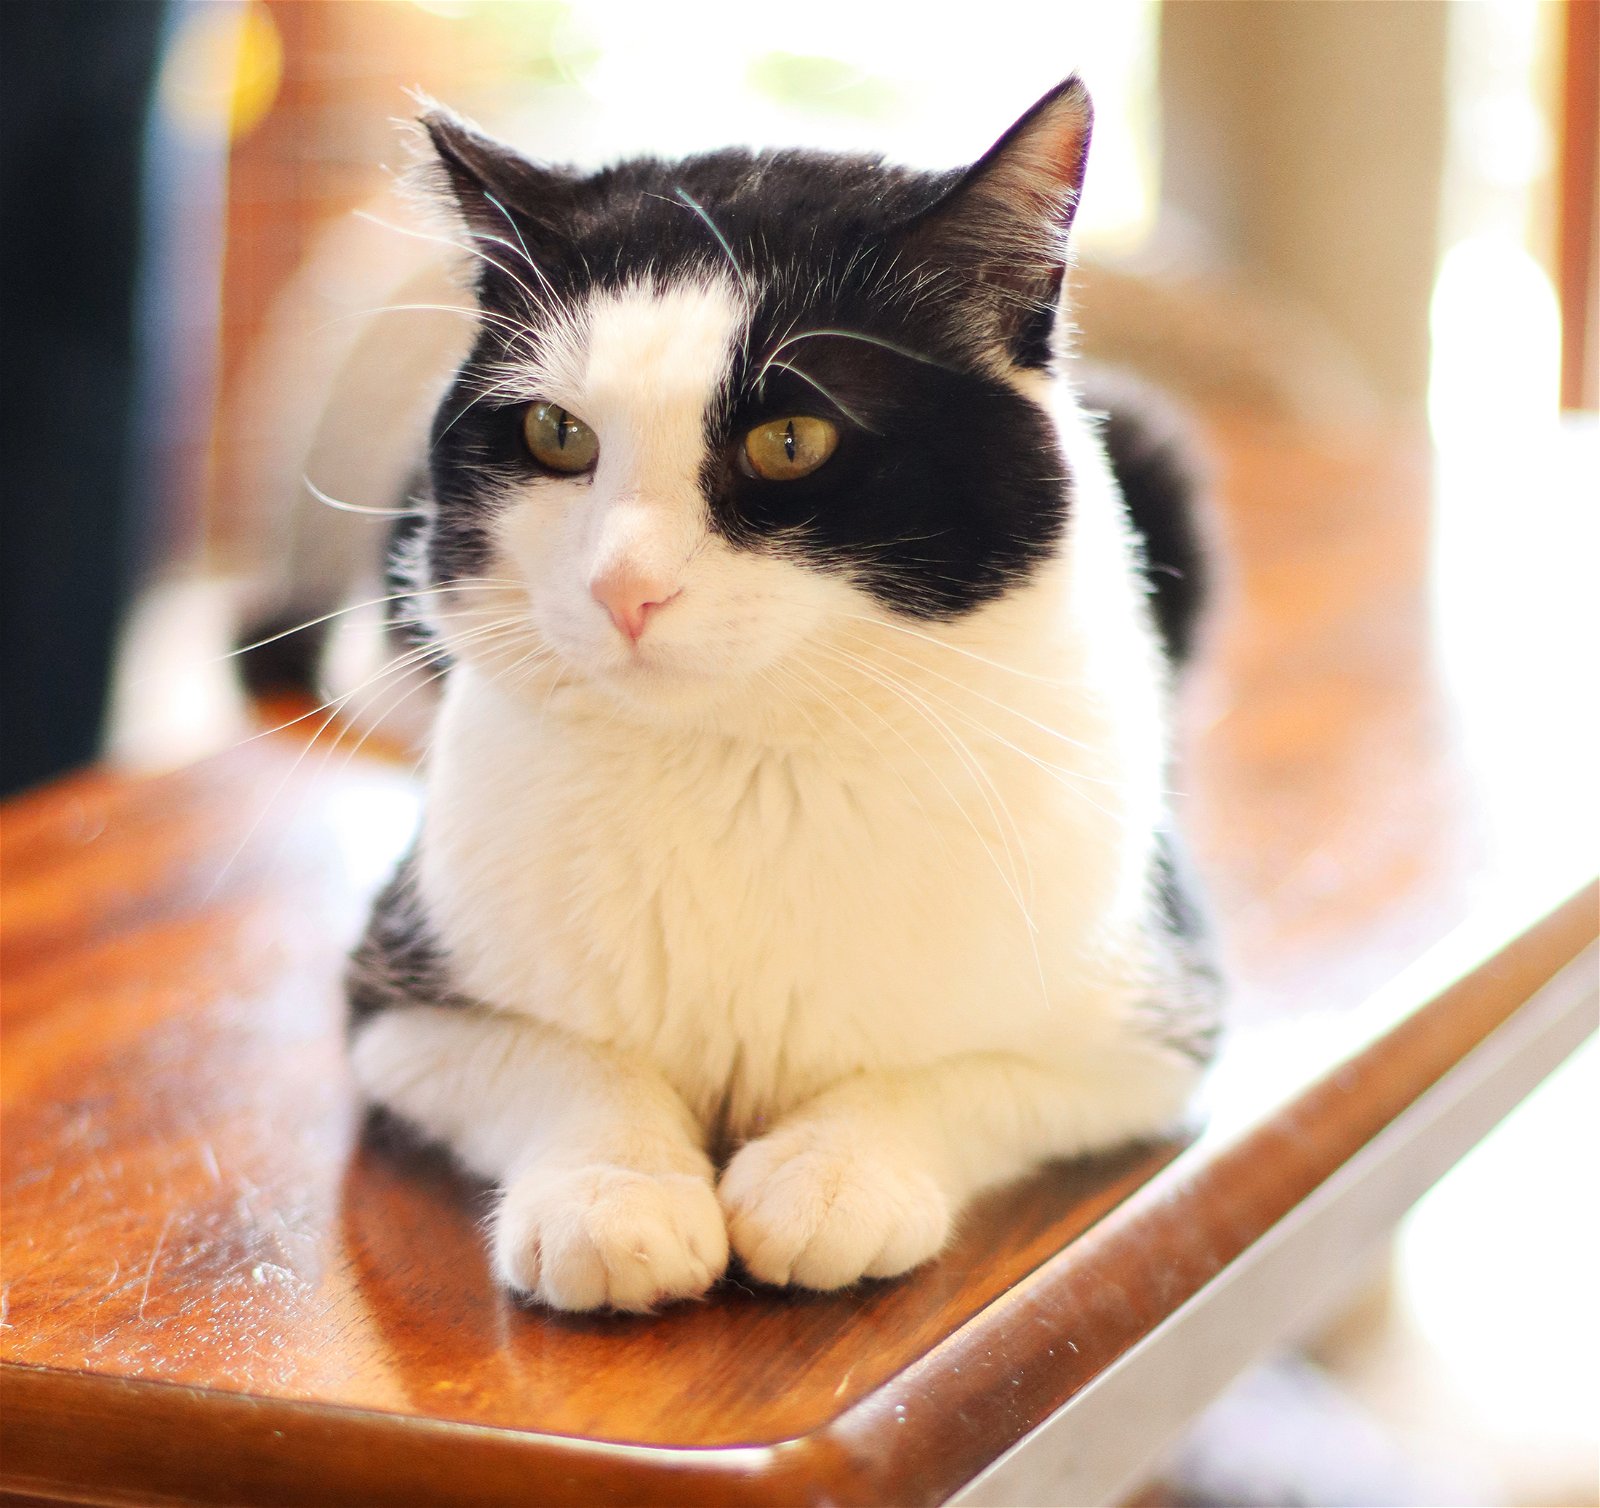 adoptable Cat in Vista, CA named Pretty Boy Floyd